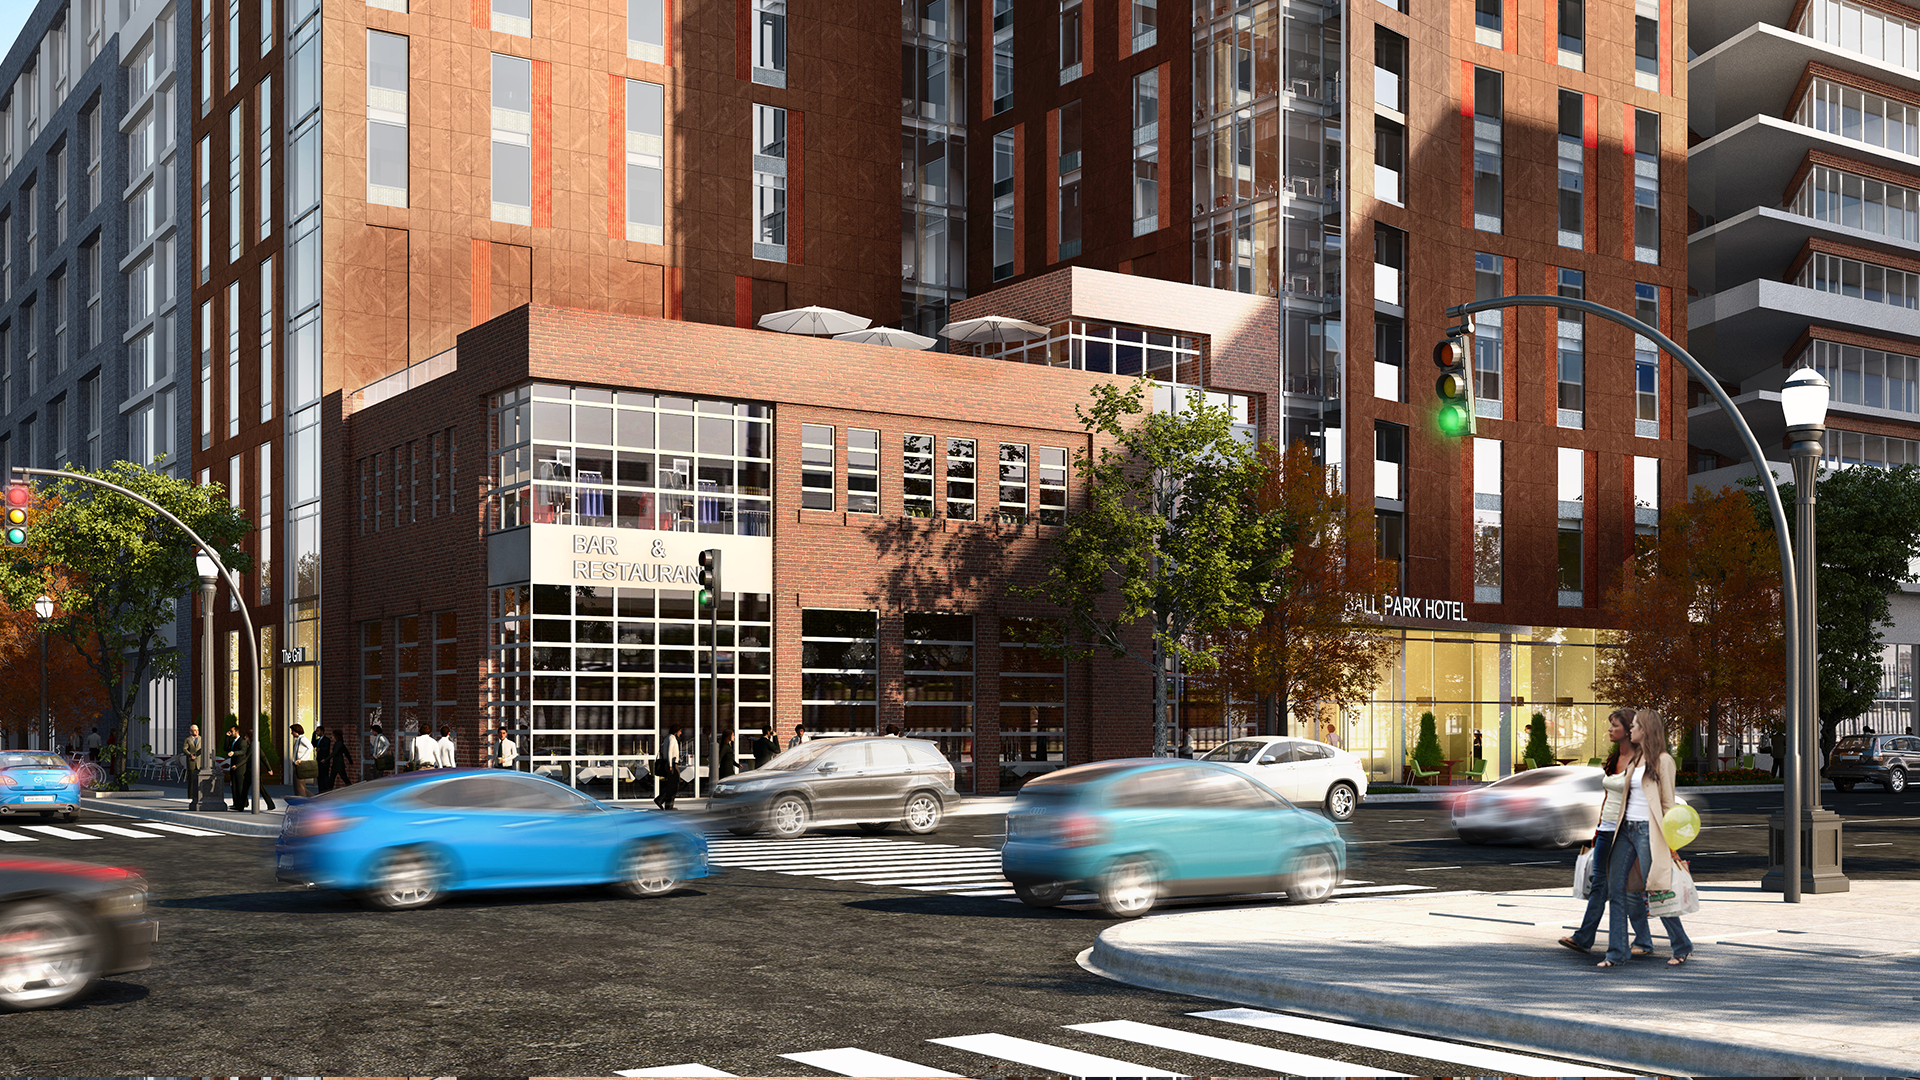 dc-ballpark-hotel-streetview-rendering